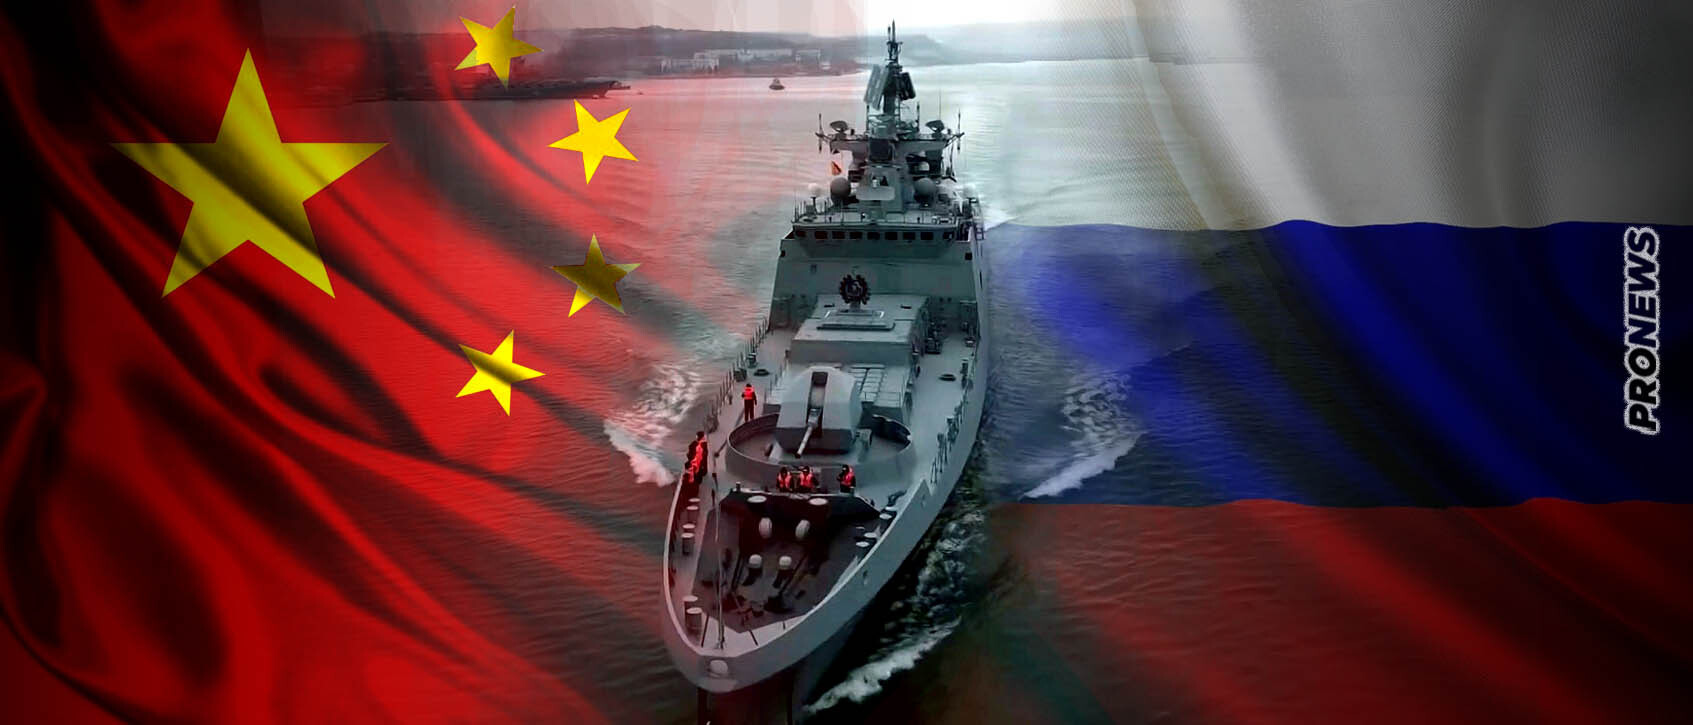 Κολοσσιαίο ναυπηγικό πρόγραμμα συμφώνησαν Ρωσία και Κίνα: Οι νέοι ρωσικοί πολεμικοί στόλοι θα ναυπηγηθούν από το Πεκίνο τα επόμενα 15 χρόνια